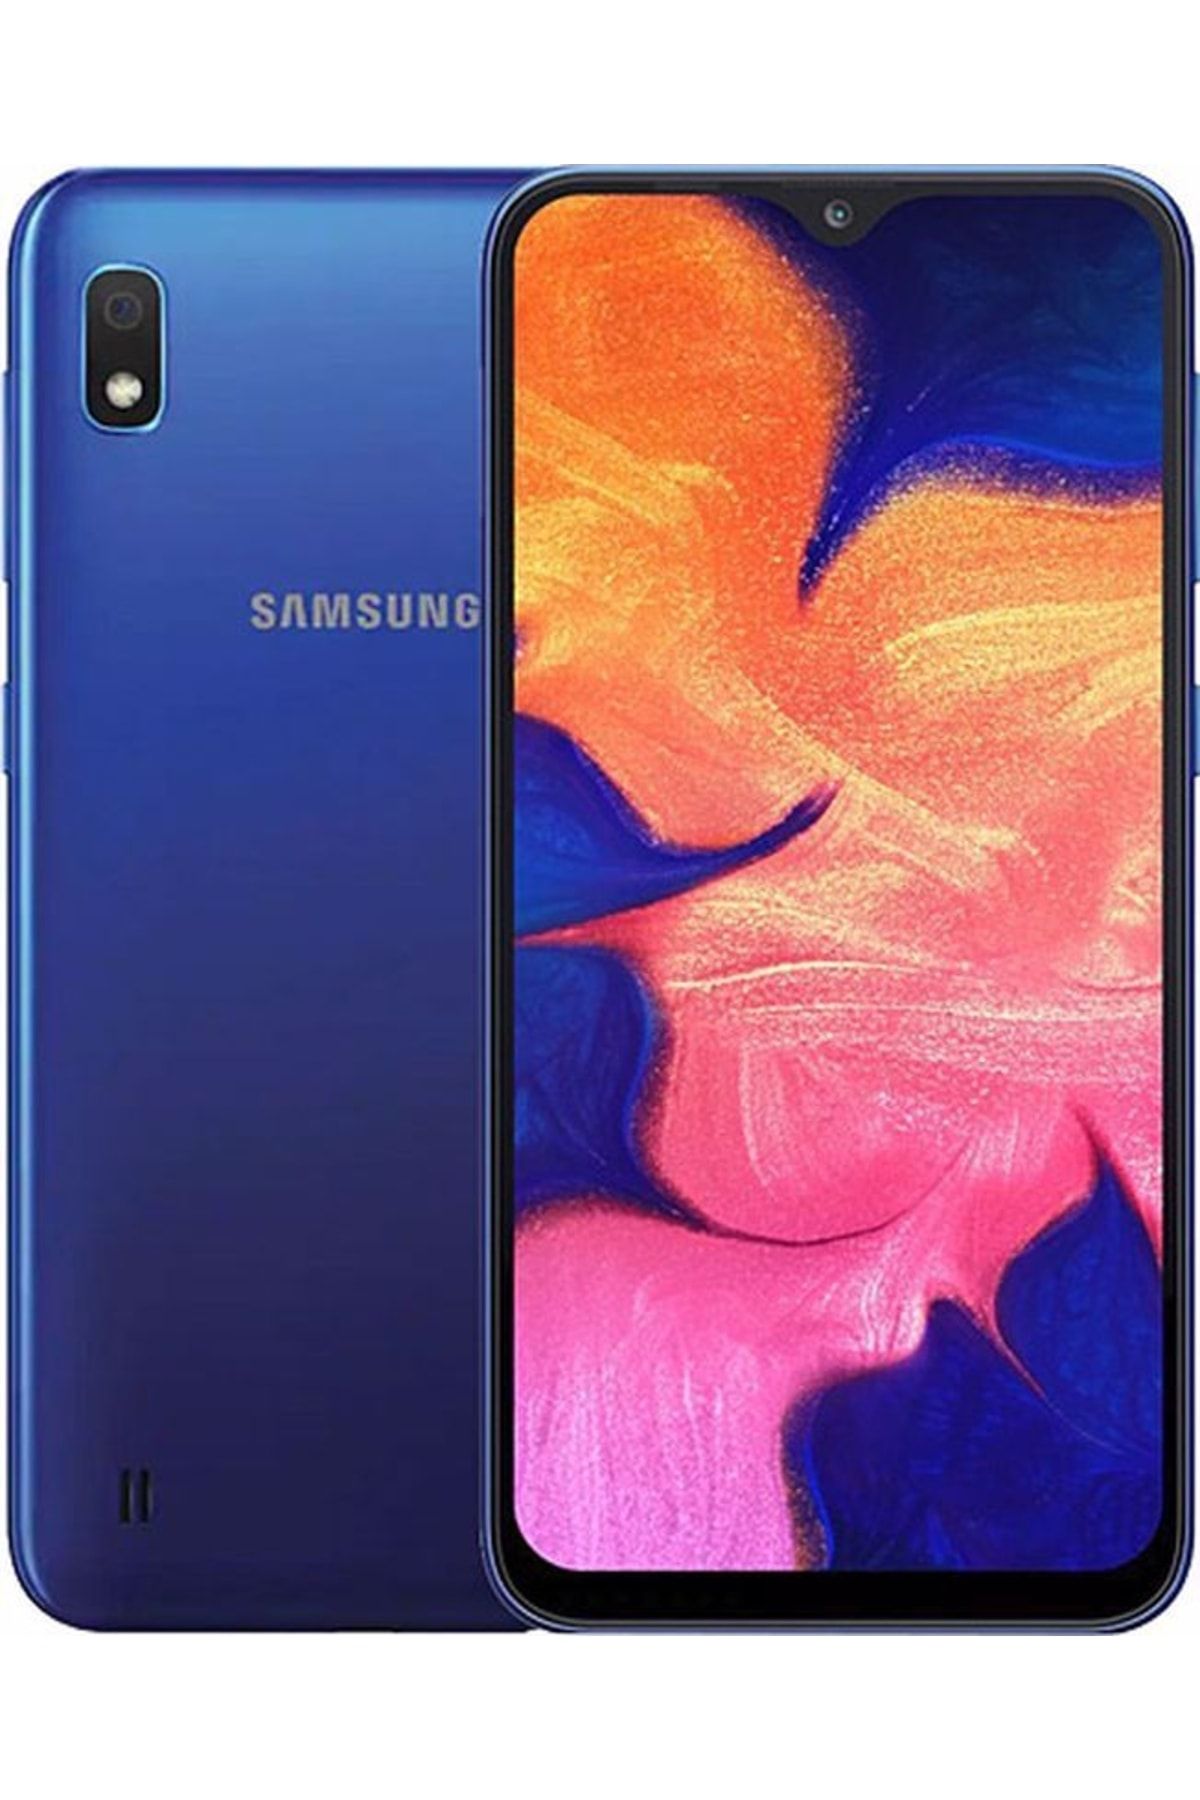 Samsung Yenilenmiş Galaxy A10 32 GB Mavi Cep Telefonu (12 Ay Garantili)